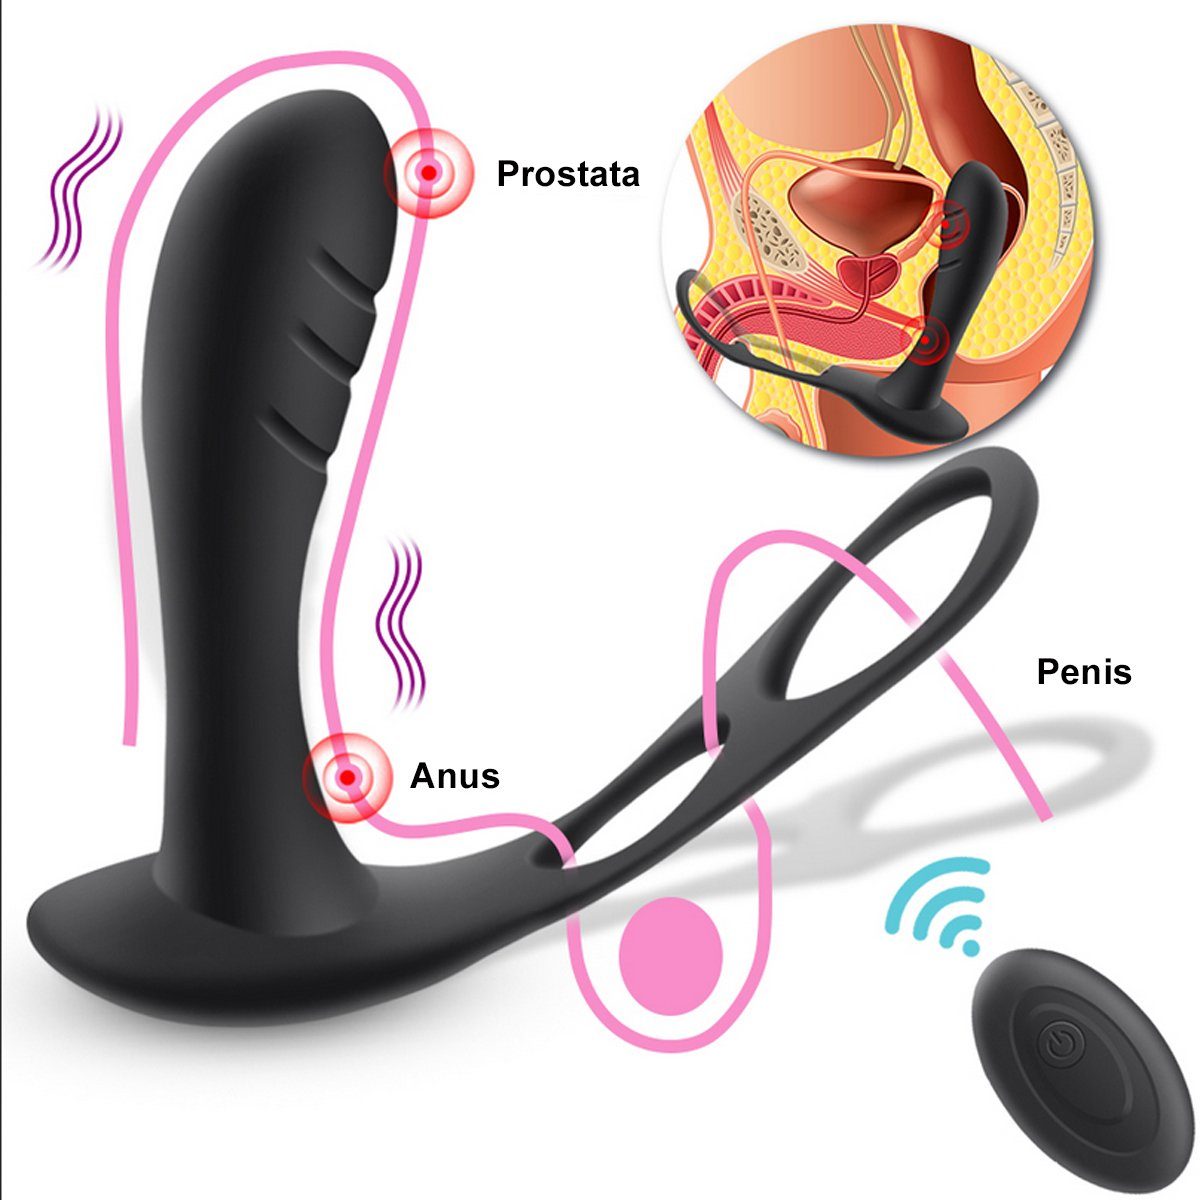 Schwarz Männer Remote mit - Analvibrator verschiedene ergonomischer Fernbedienung Anal wiederaufladbar), USB über Prostata mit Control Anal und Vibrationsmodi, Penisring Hodenring, für Vibrator (10 TPFSecret Vibrator